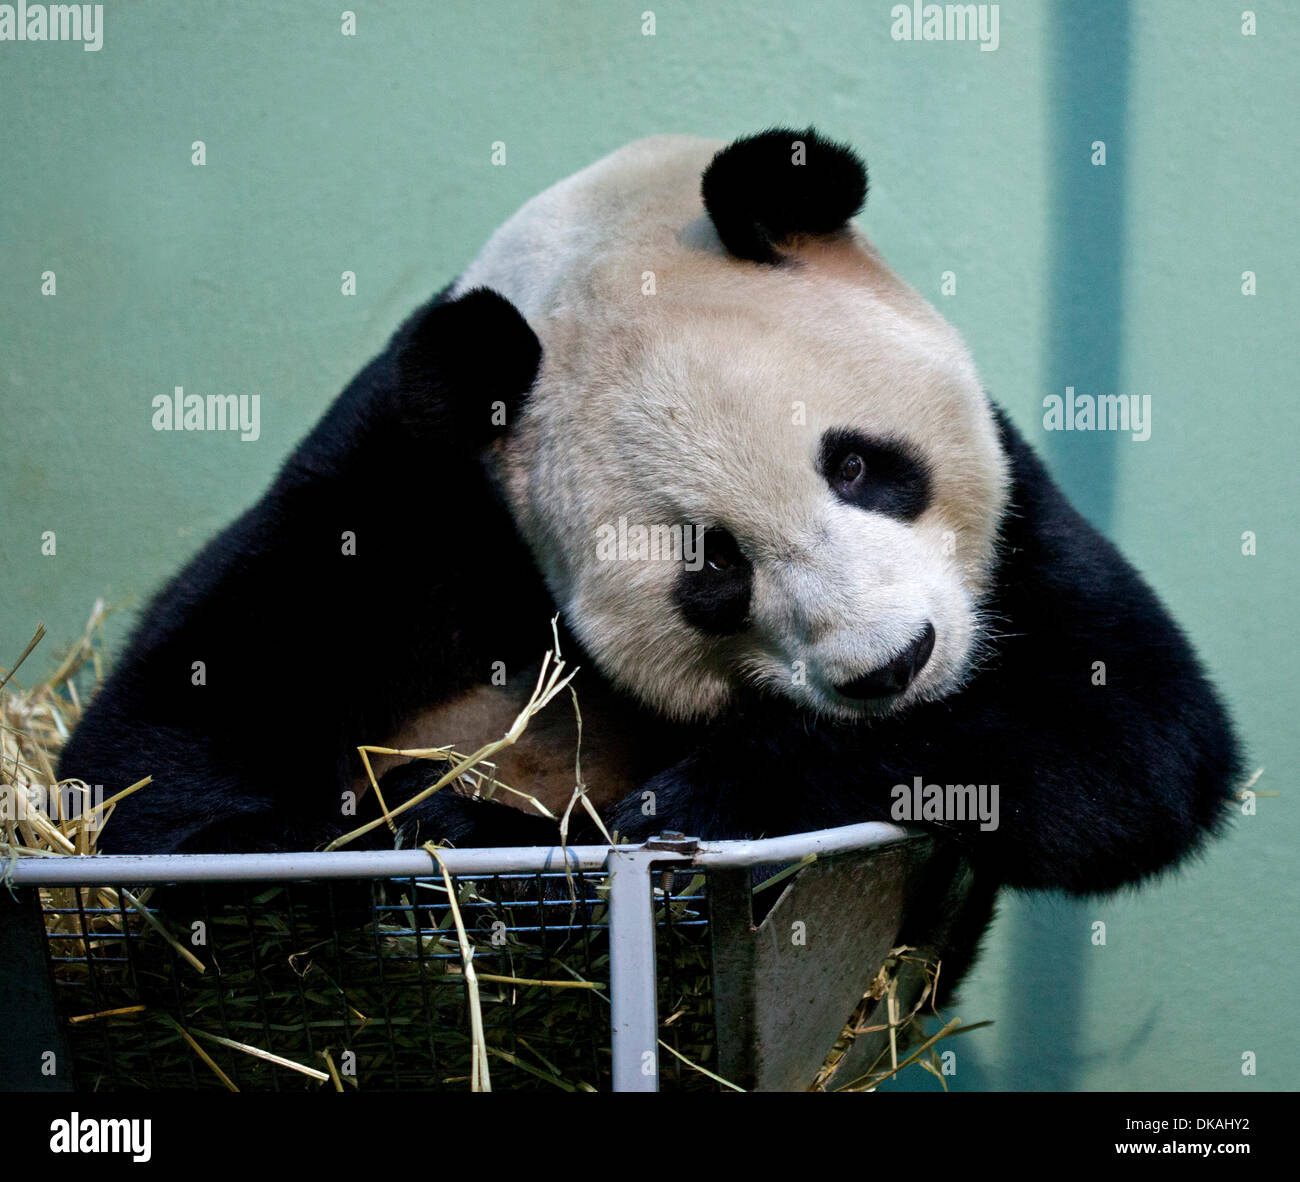 Lo Zoo di Edimburgo, Scozia, Regno Unito. Il 4 dicembre 2013. 2° anniversario di due Panda Giganti Tian Tian e Yang Guang essendo ricevuti presso lo Zoo di Edimburgo su un prestito a dieci anni dalla Cina. Foto Stock